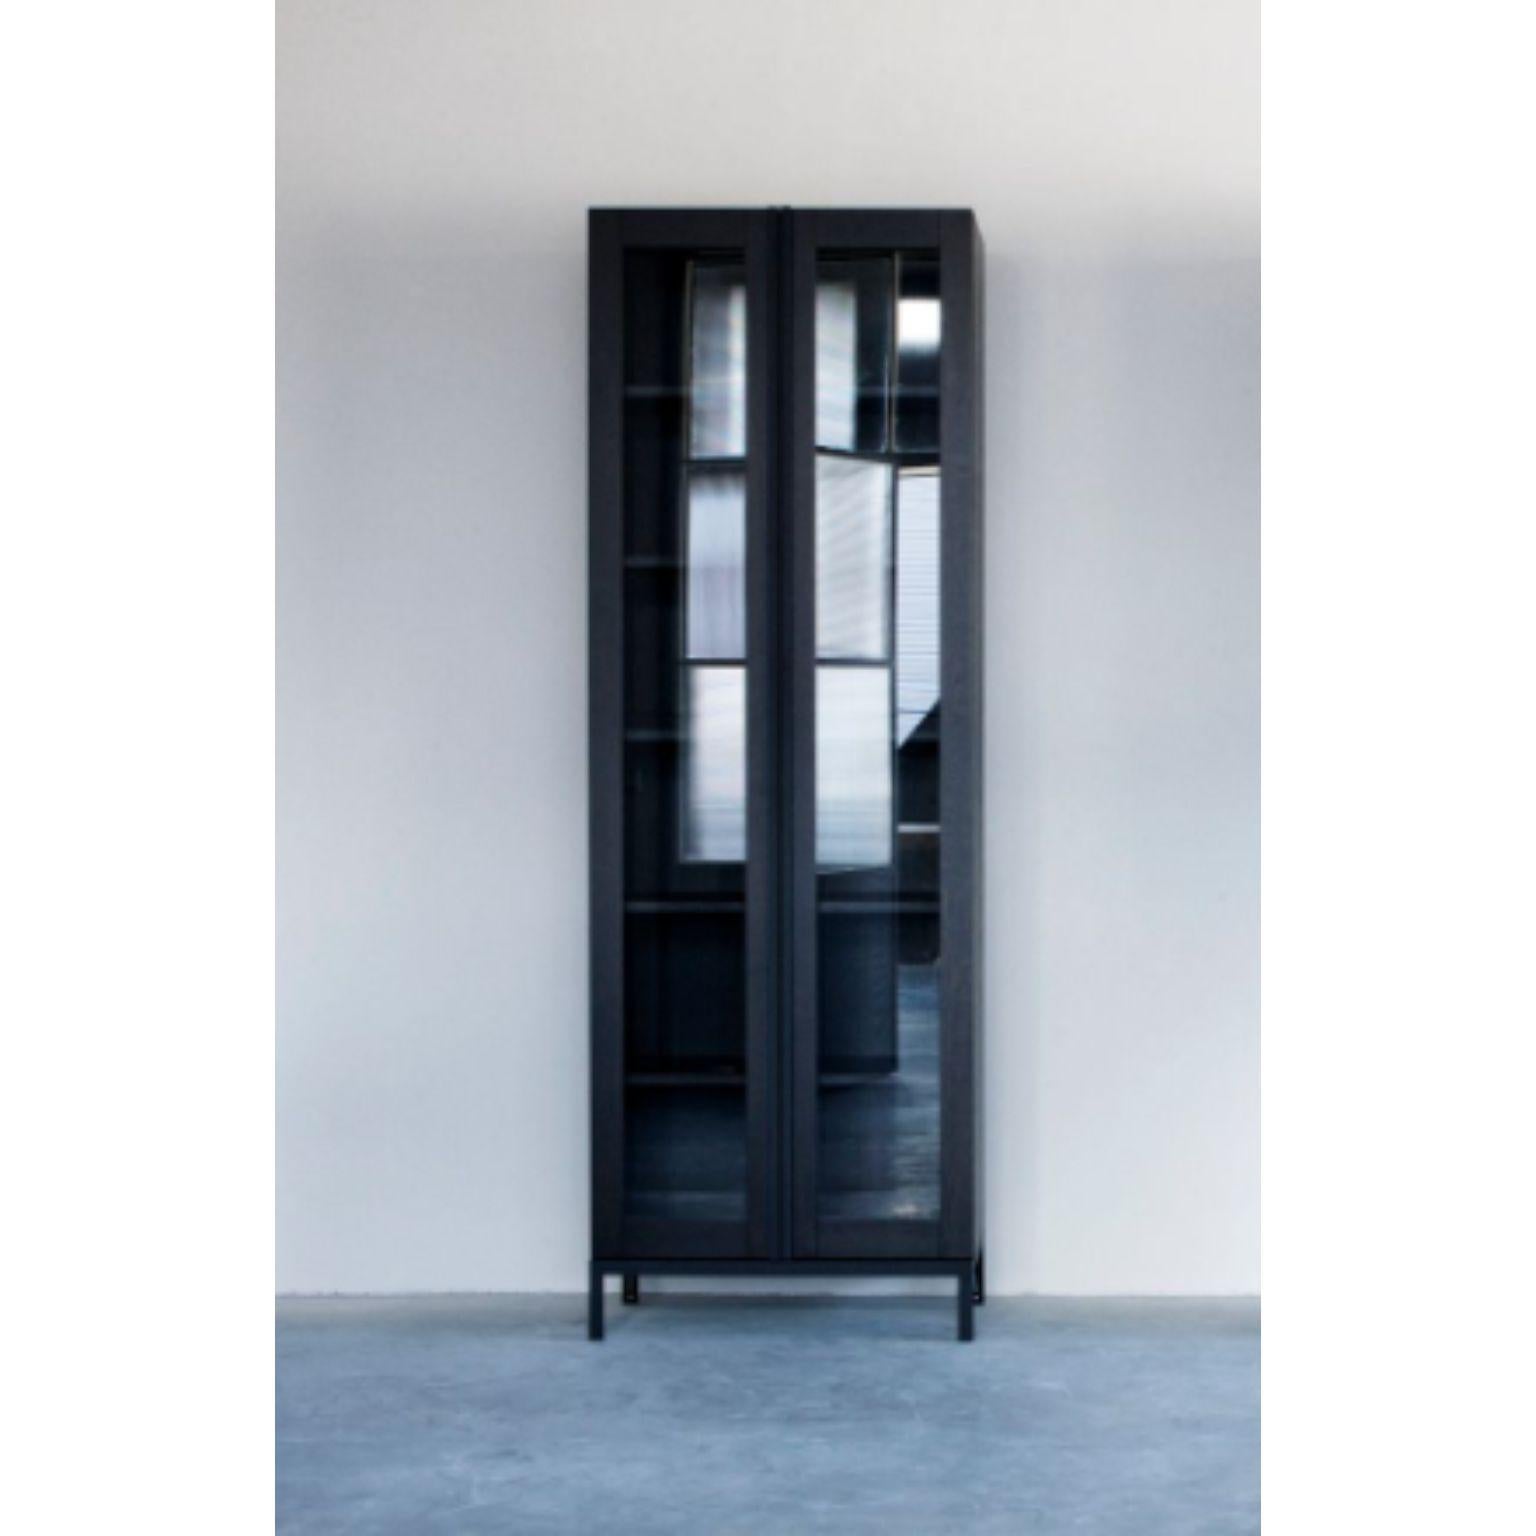 Armoire Greep avec portes en verre par Van Rossum
Dimensions : D76 x L41 x H226 cm
MATERIAL : Chêne, acier, verre.

Le bois est disponible dans toutes les couleurs standard de Van Rossum, ou dans une finition assortie à l'échantillon du client.
Les